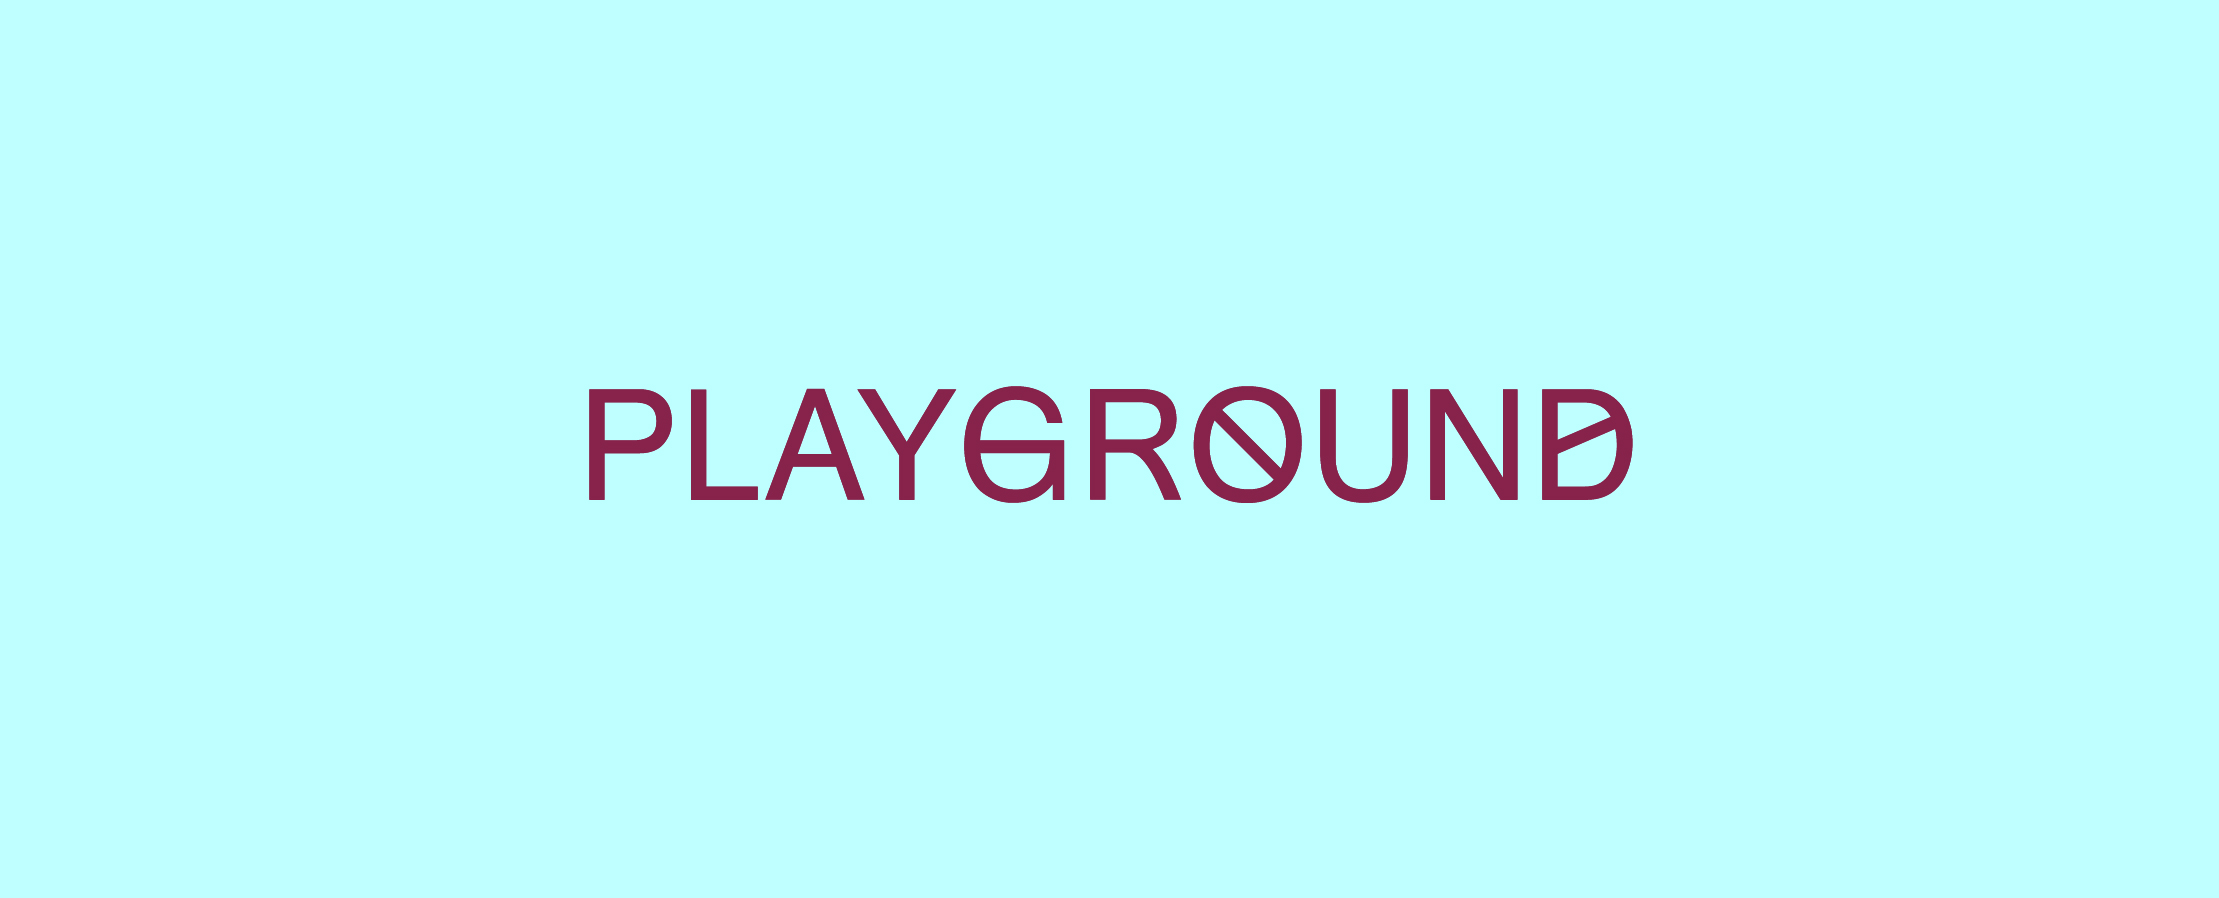 Playground Pergine Festival